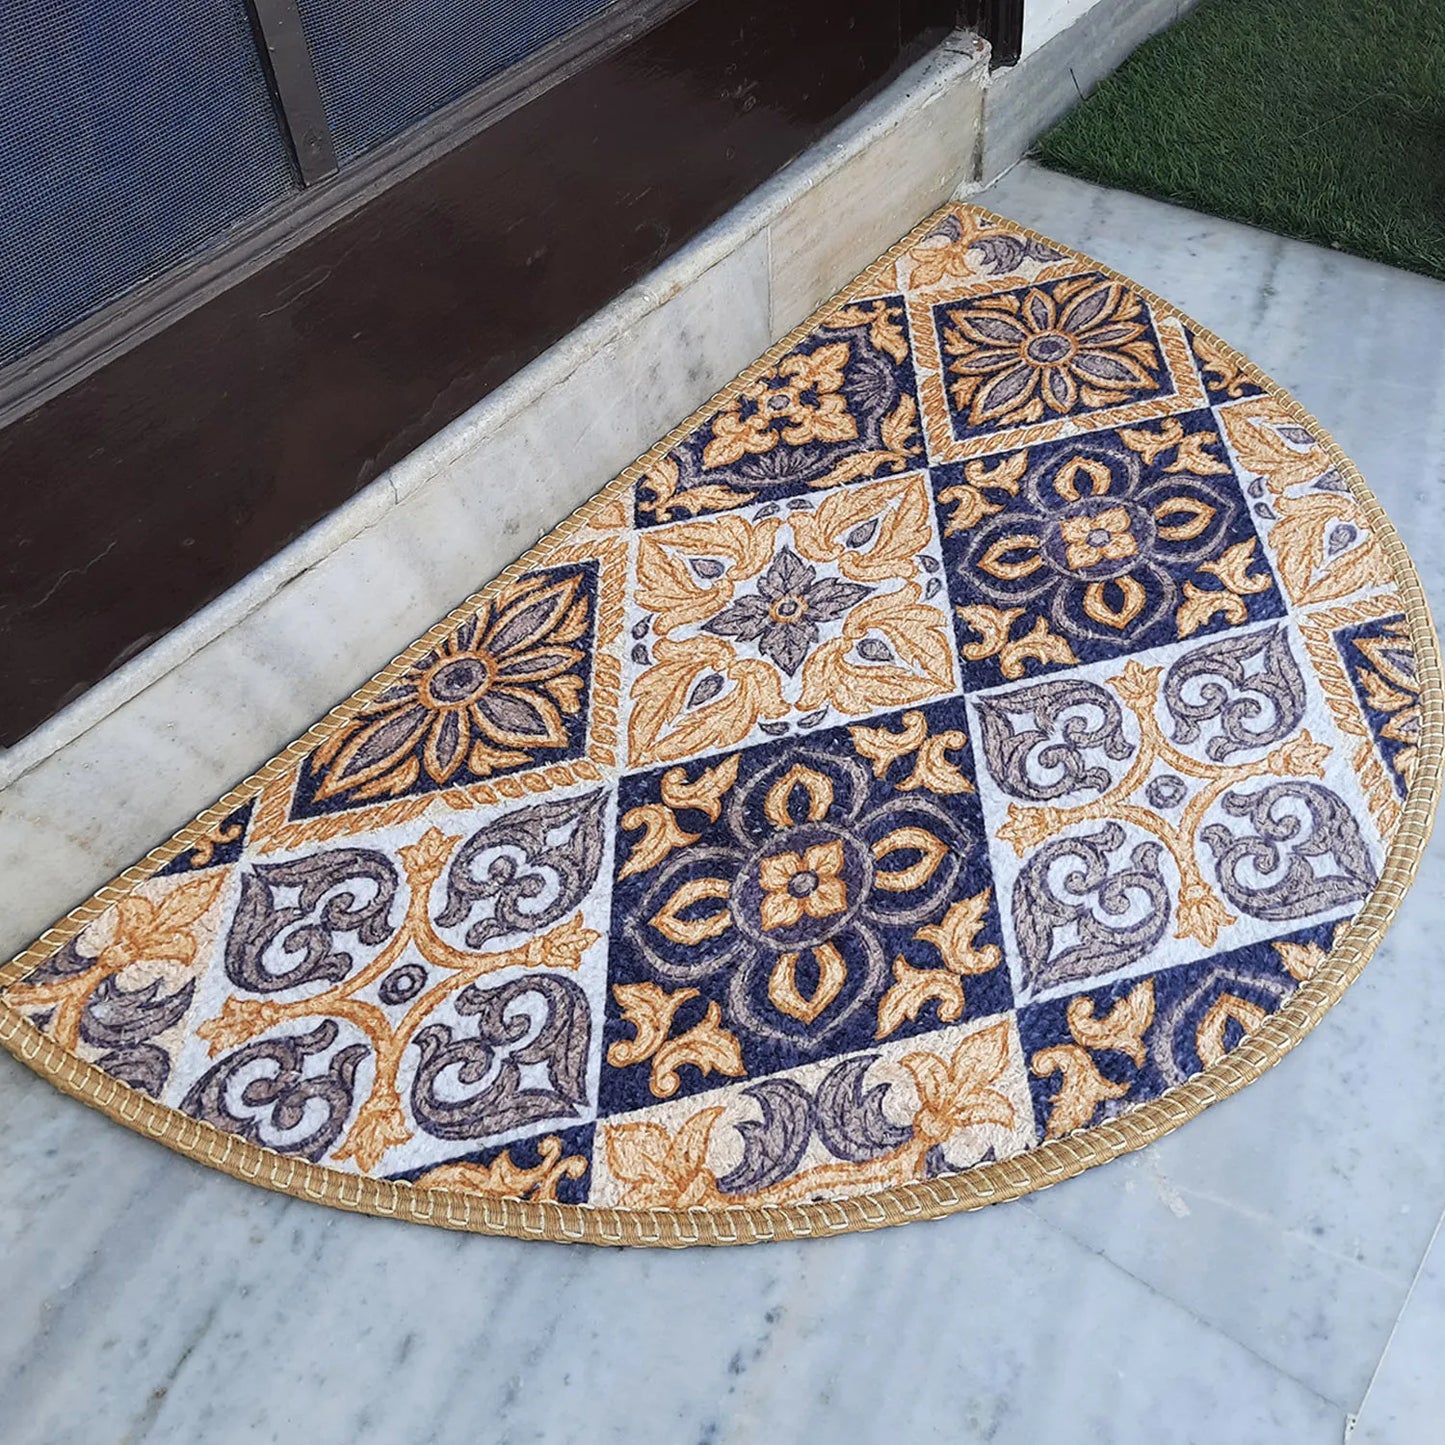 Avioni Home Floor Mats in Beautiful Moroccan Brown Design – Anti Slip, Durable & Washable | Outdoor & Indoor